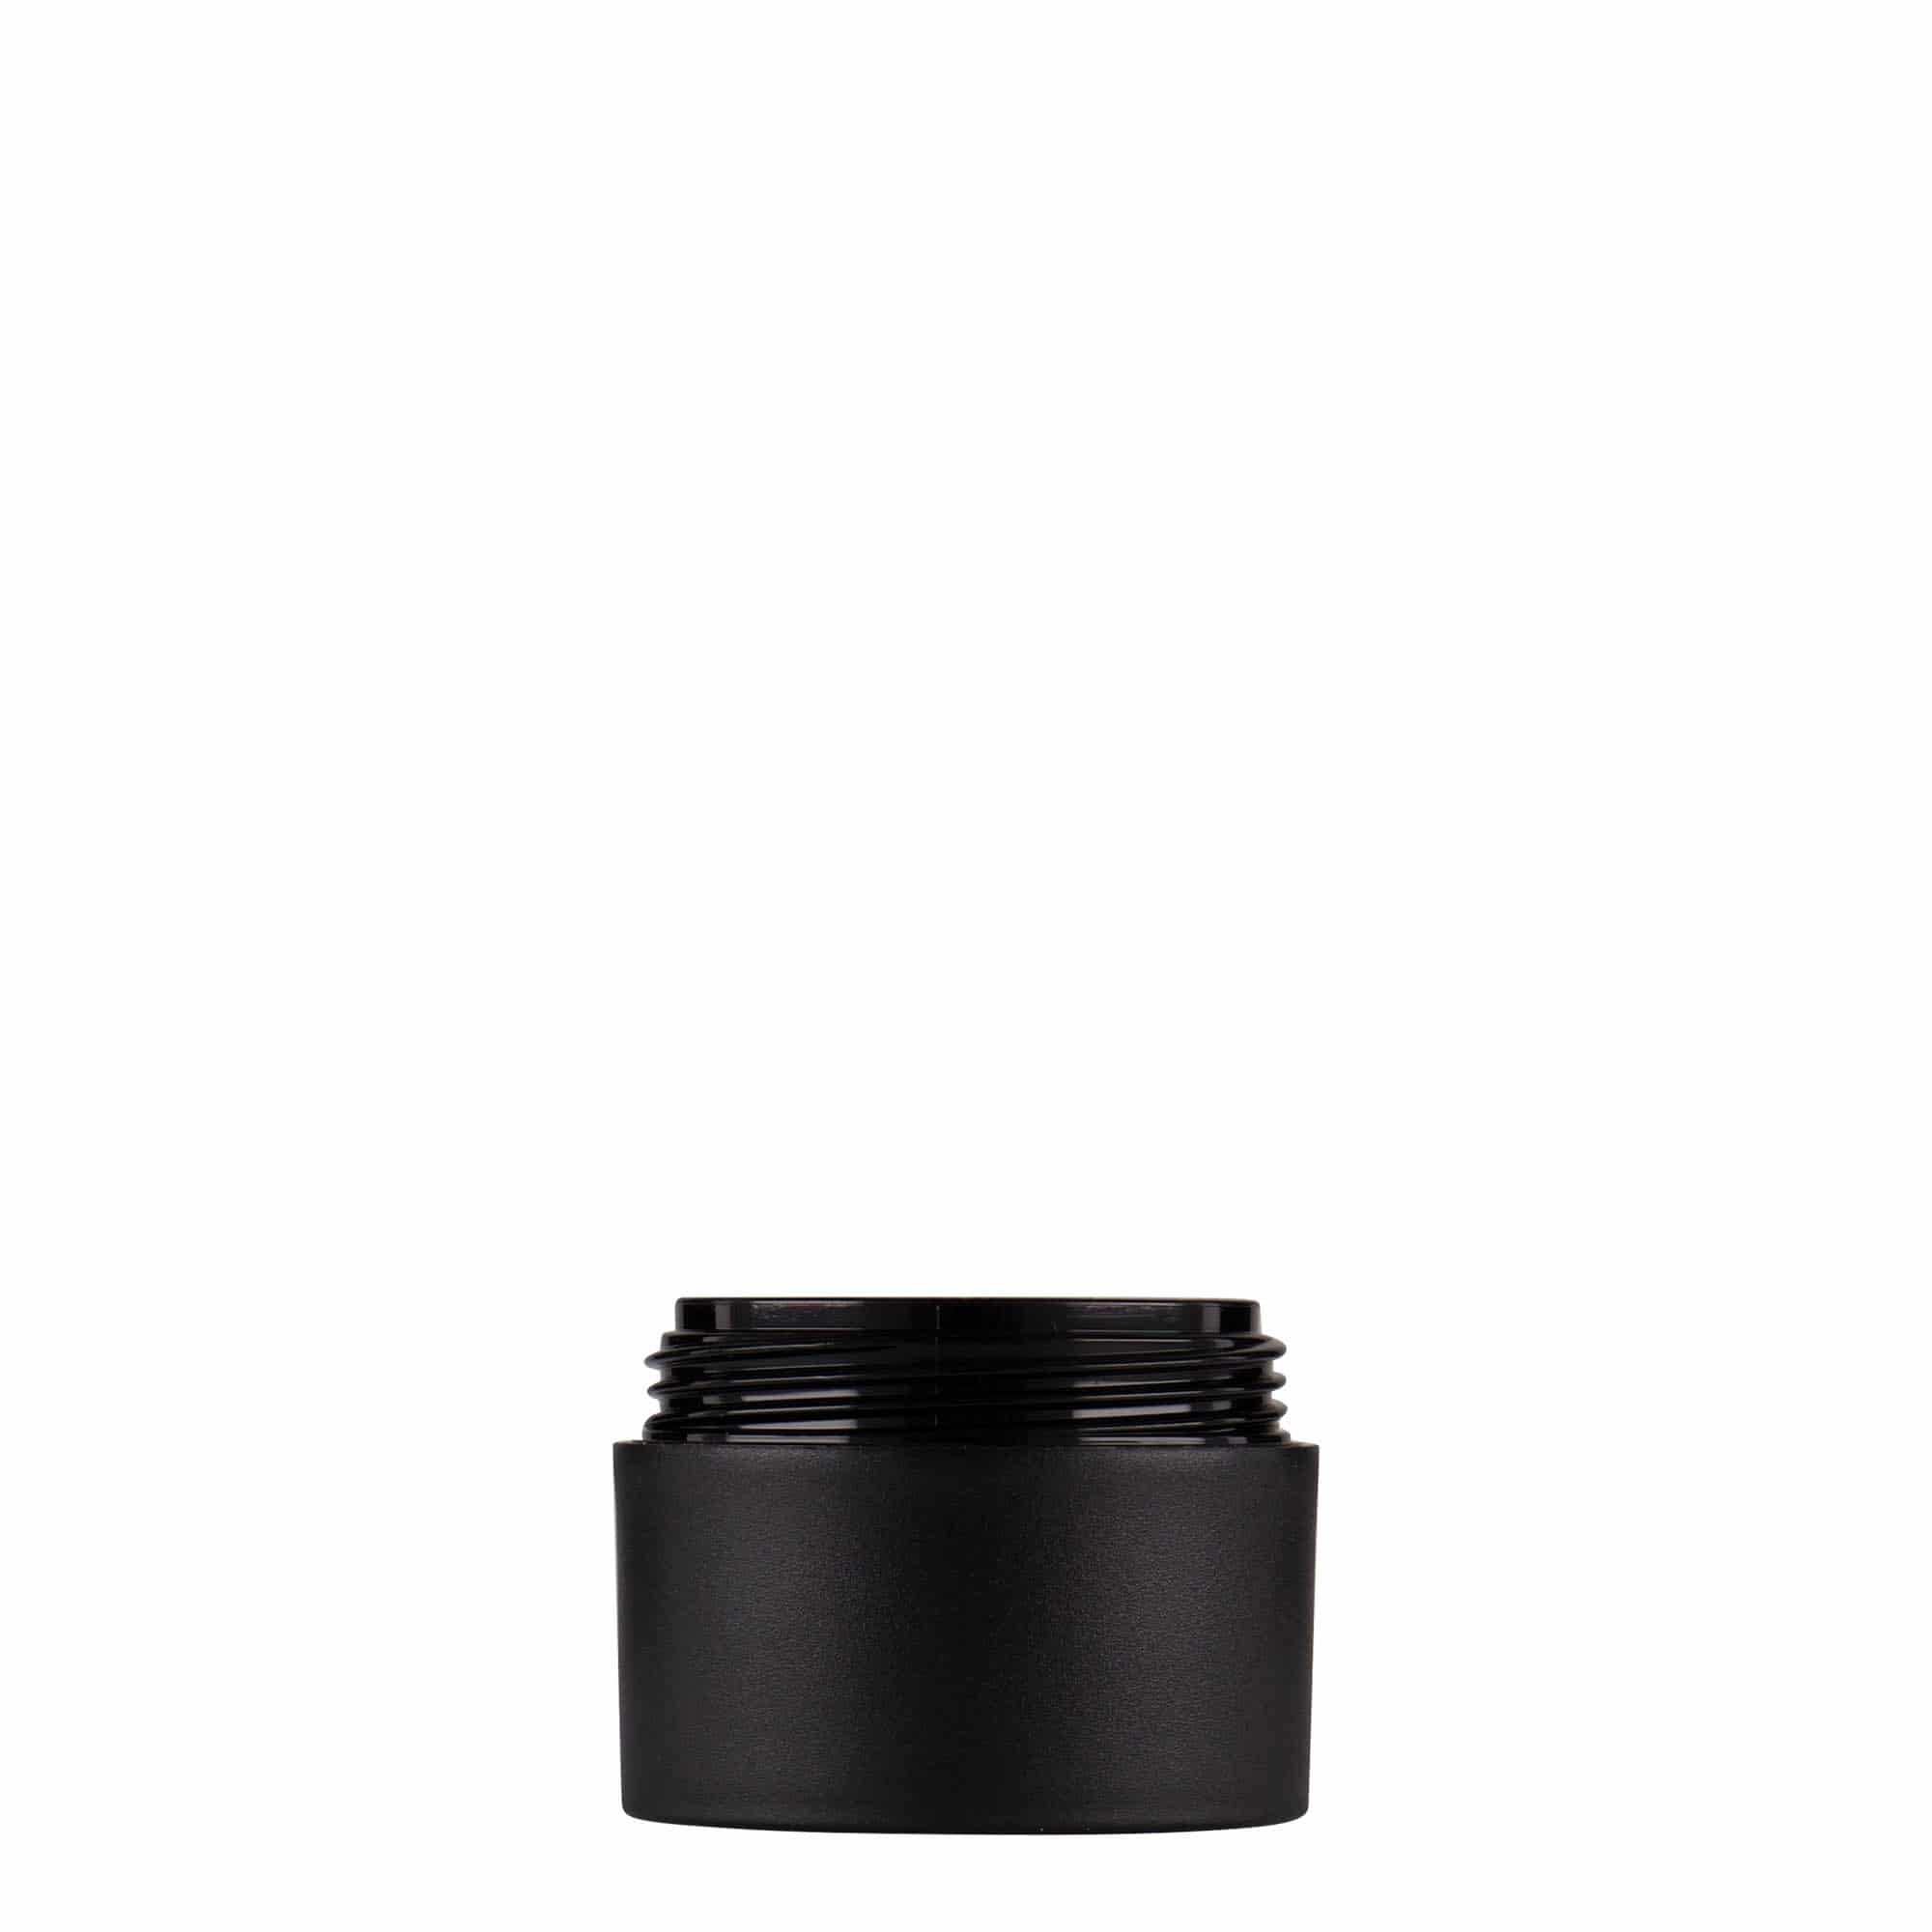 15 ml plastic jar 'Antonella', PP, black, closure: screw cap